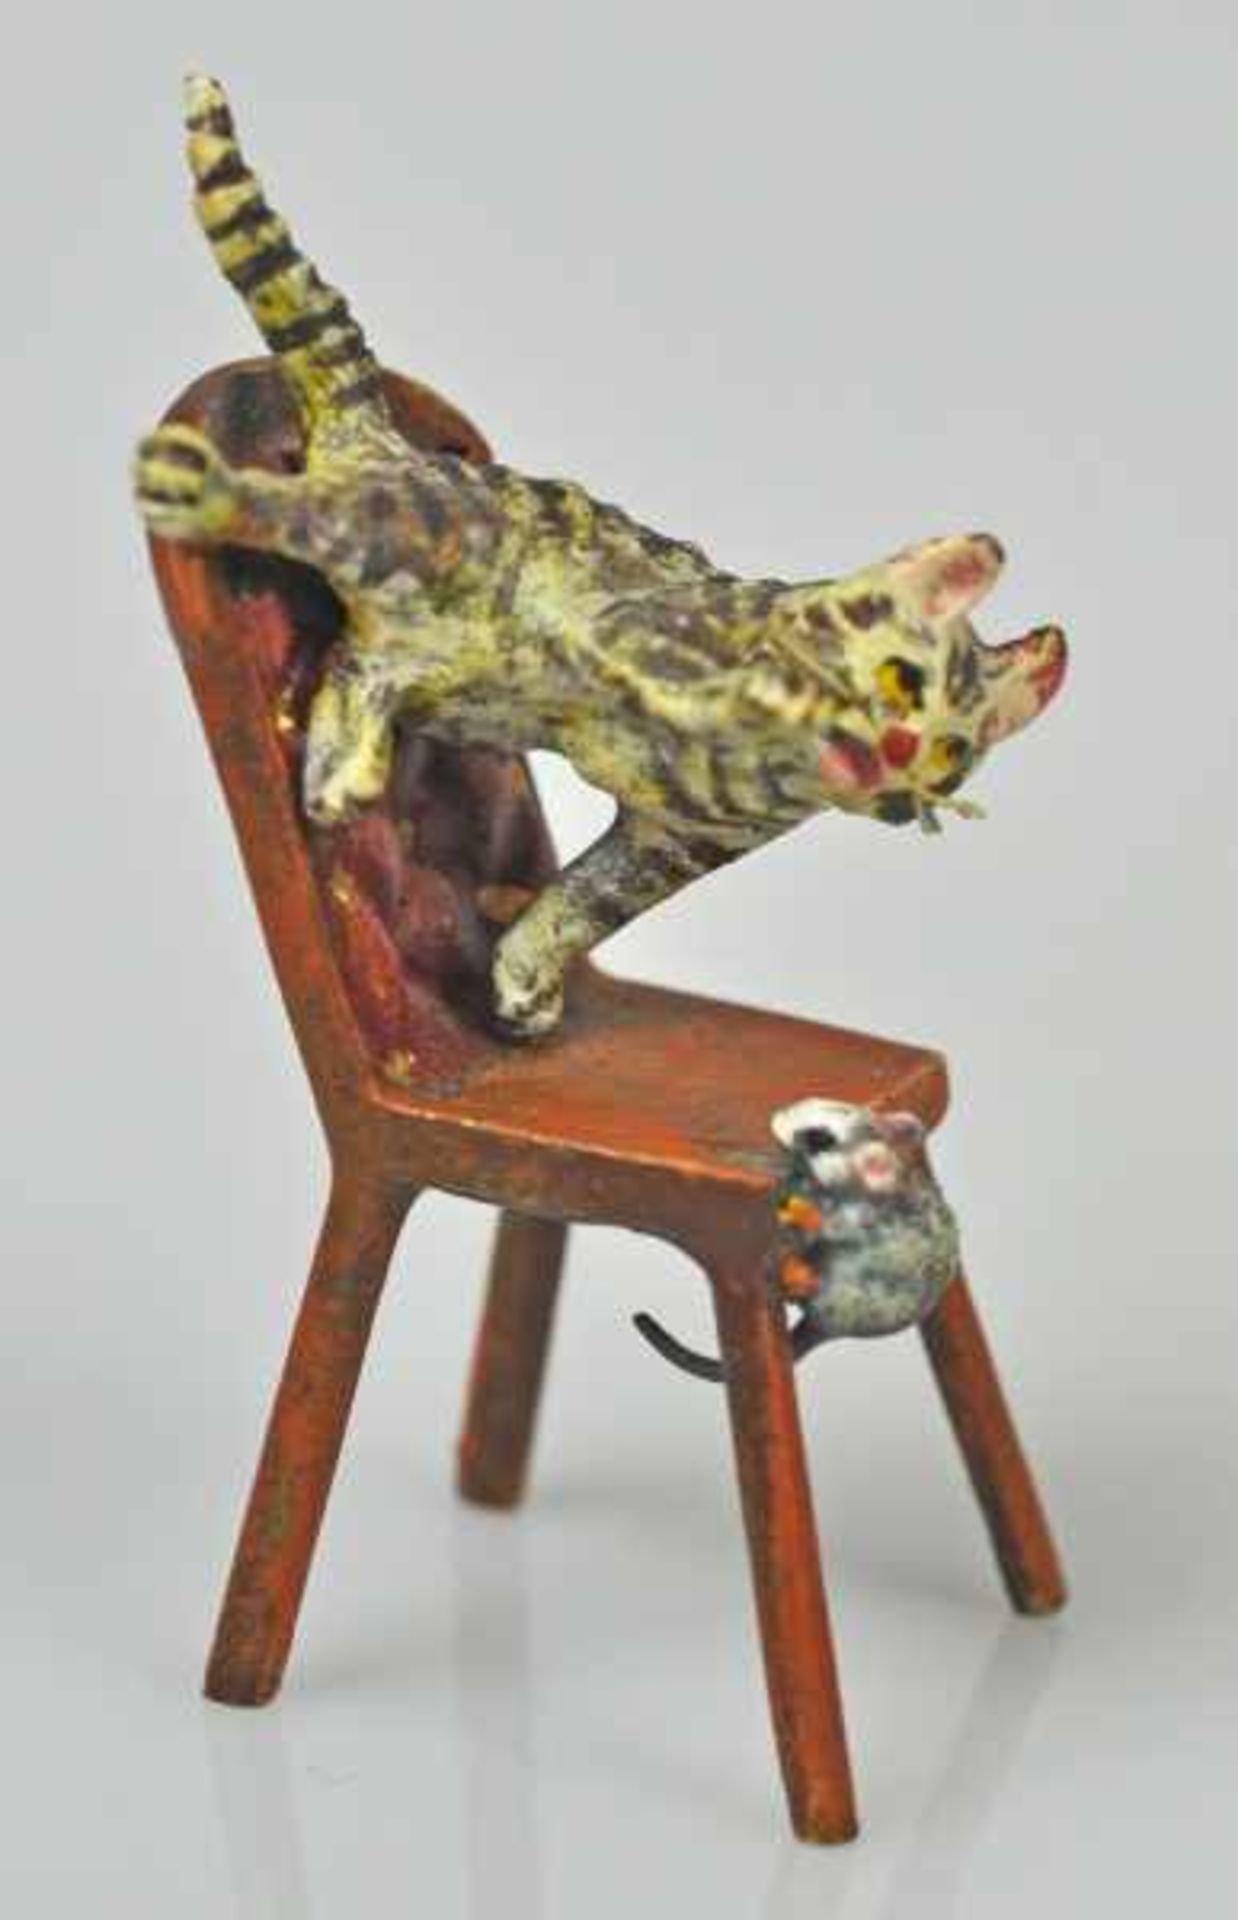 KATZE eine Maus jagend, auf Stuhl, Wiener Bronze, gemarkt u. bez. Bermann Wien, H 5cm